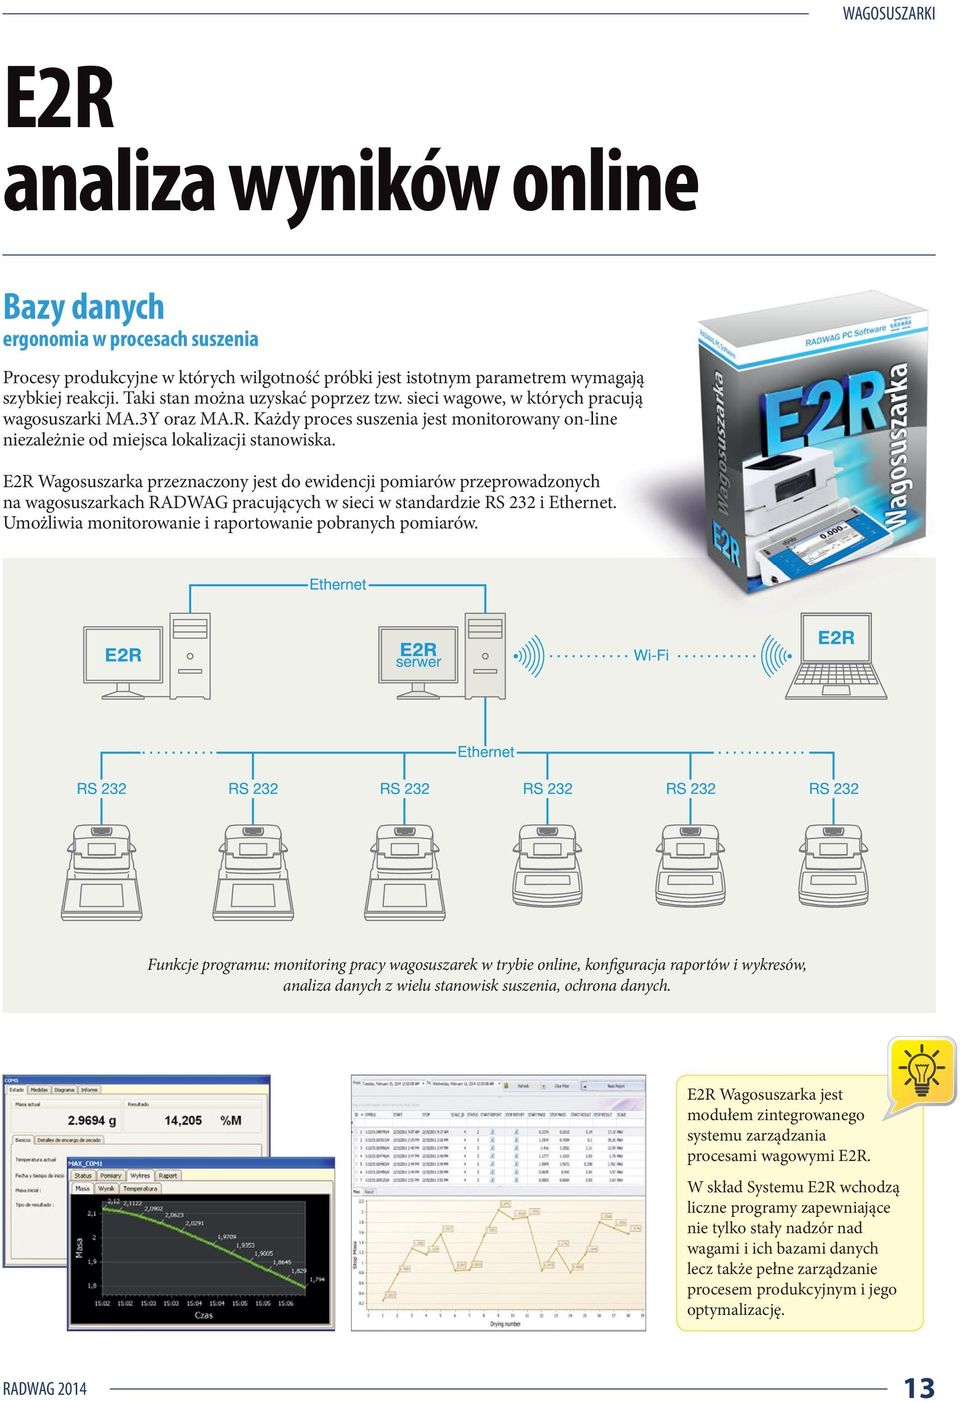 E2R Wagosuszarka przeznaczony jest do ewidencji pomiarów przeprowadzonych na wagosuszarkach RADWAG pracujących w sieci w standardzie RS 232 i Ethernet.